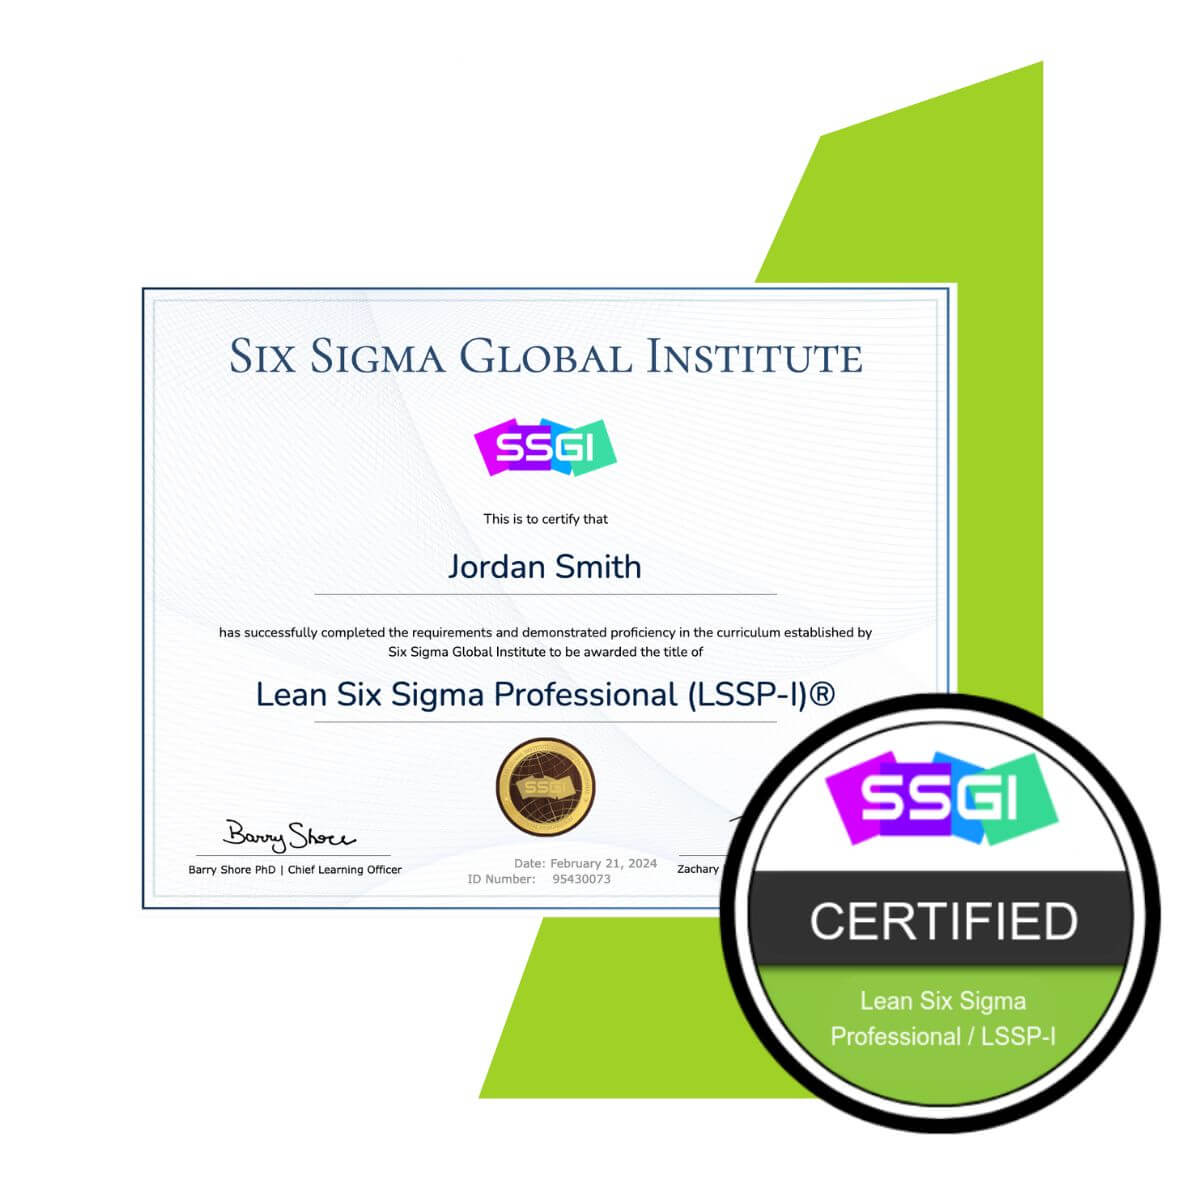 SSGI Lean Six Sigma Professional (LSSP-I)